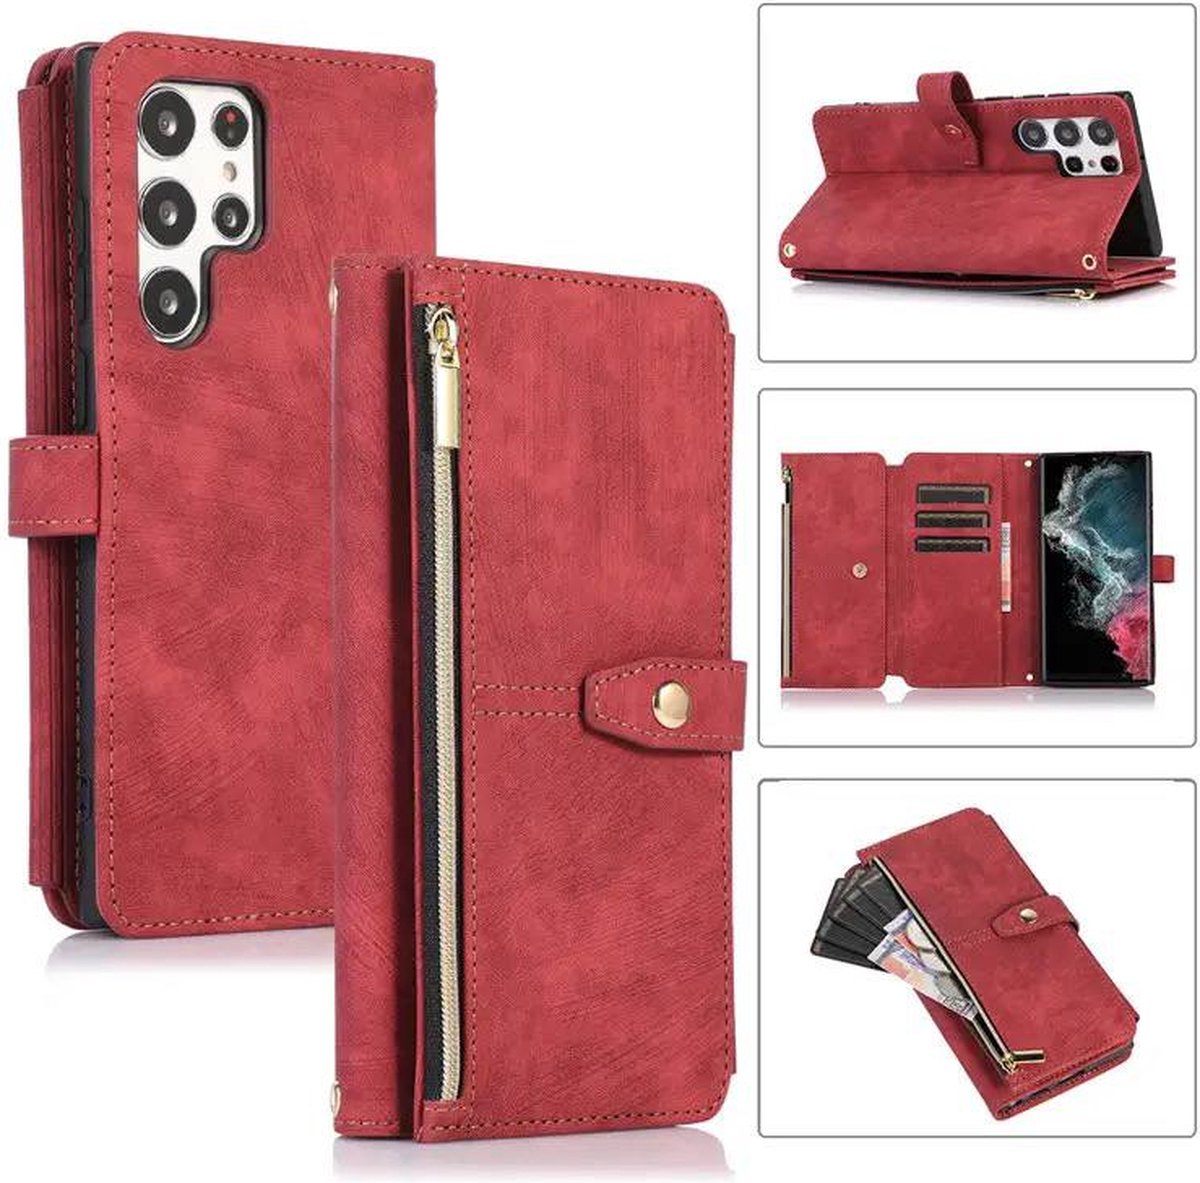 Hoesje Samsung galaxy S22 Ultra Rood hoesje-Book Case – Portemonnee Hoesje – Wallet book case - ruimte voor Extra pasje en munten-super stevige hoesje portemonnee Samsung S22 Ultra